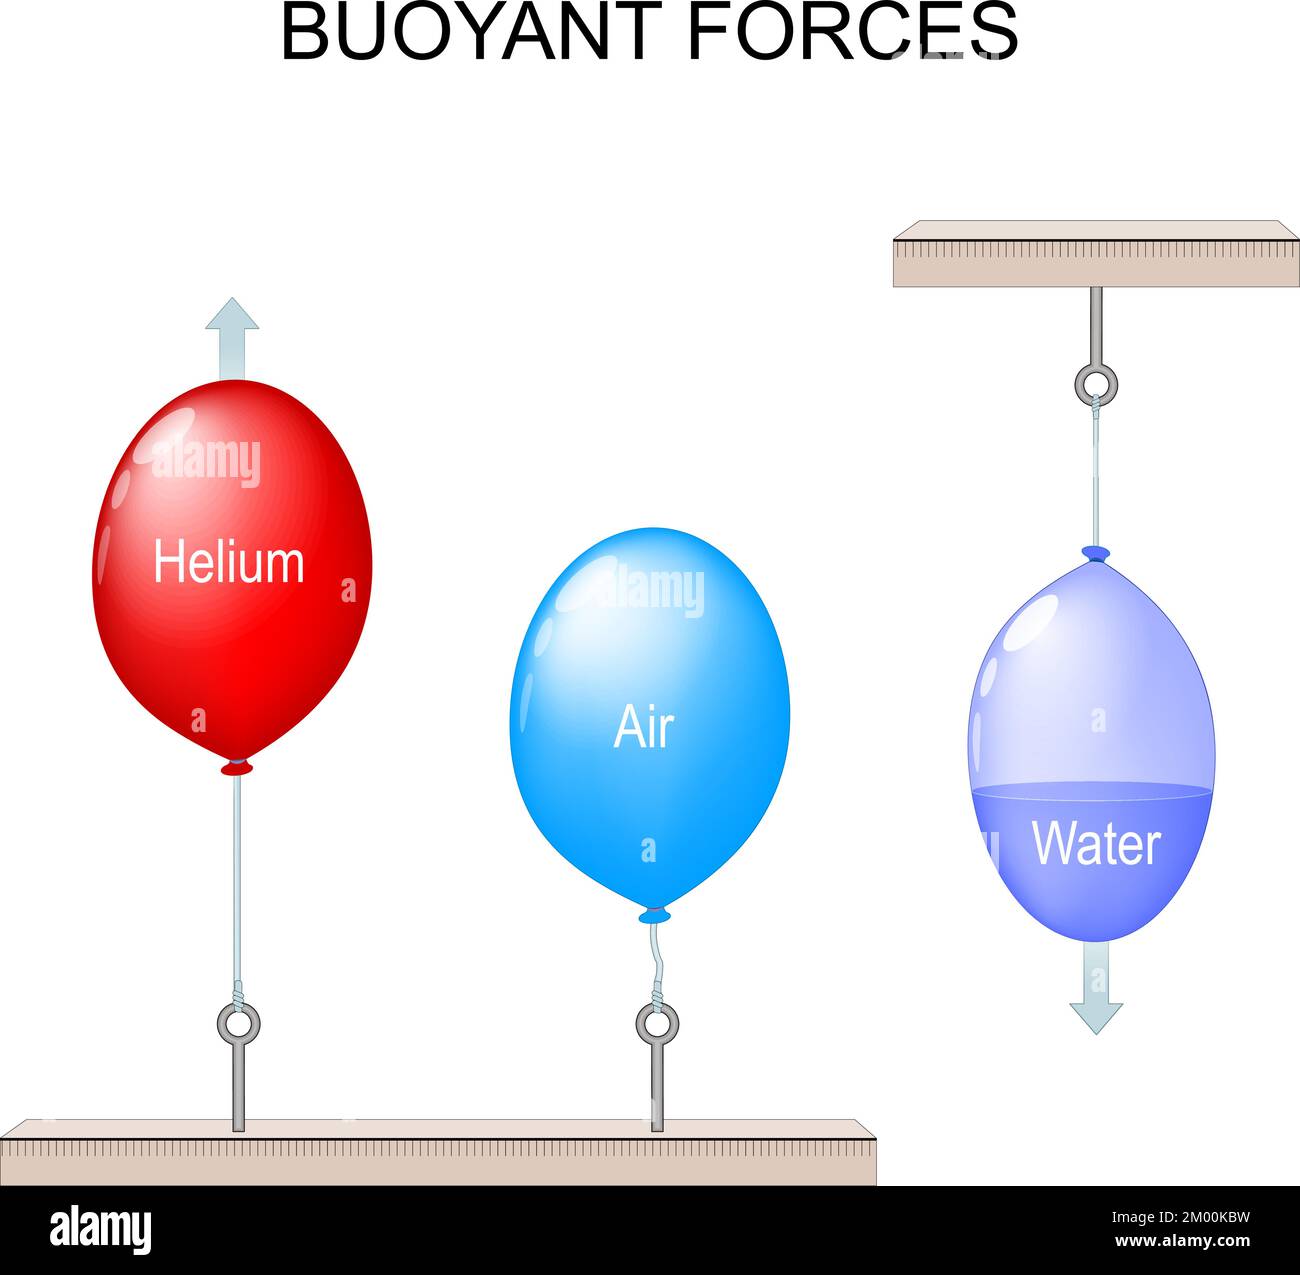 Schwimmende Kraft. Wissenschaftlicher Versuch mit Ballonen. Die Kräfte arbeiten in Auftrieb. Ein roter Ballon mit Gas Helium und zwei blaue Ballon mit Luft und Stock Vektor